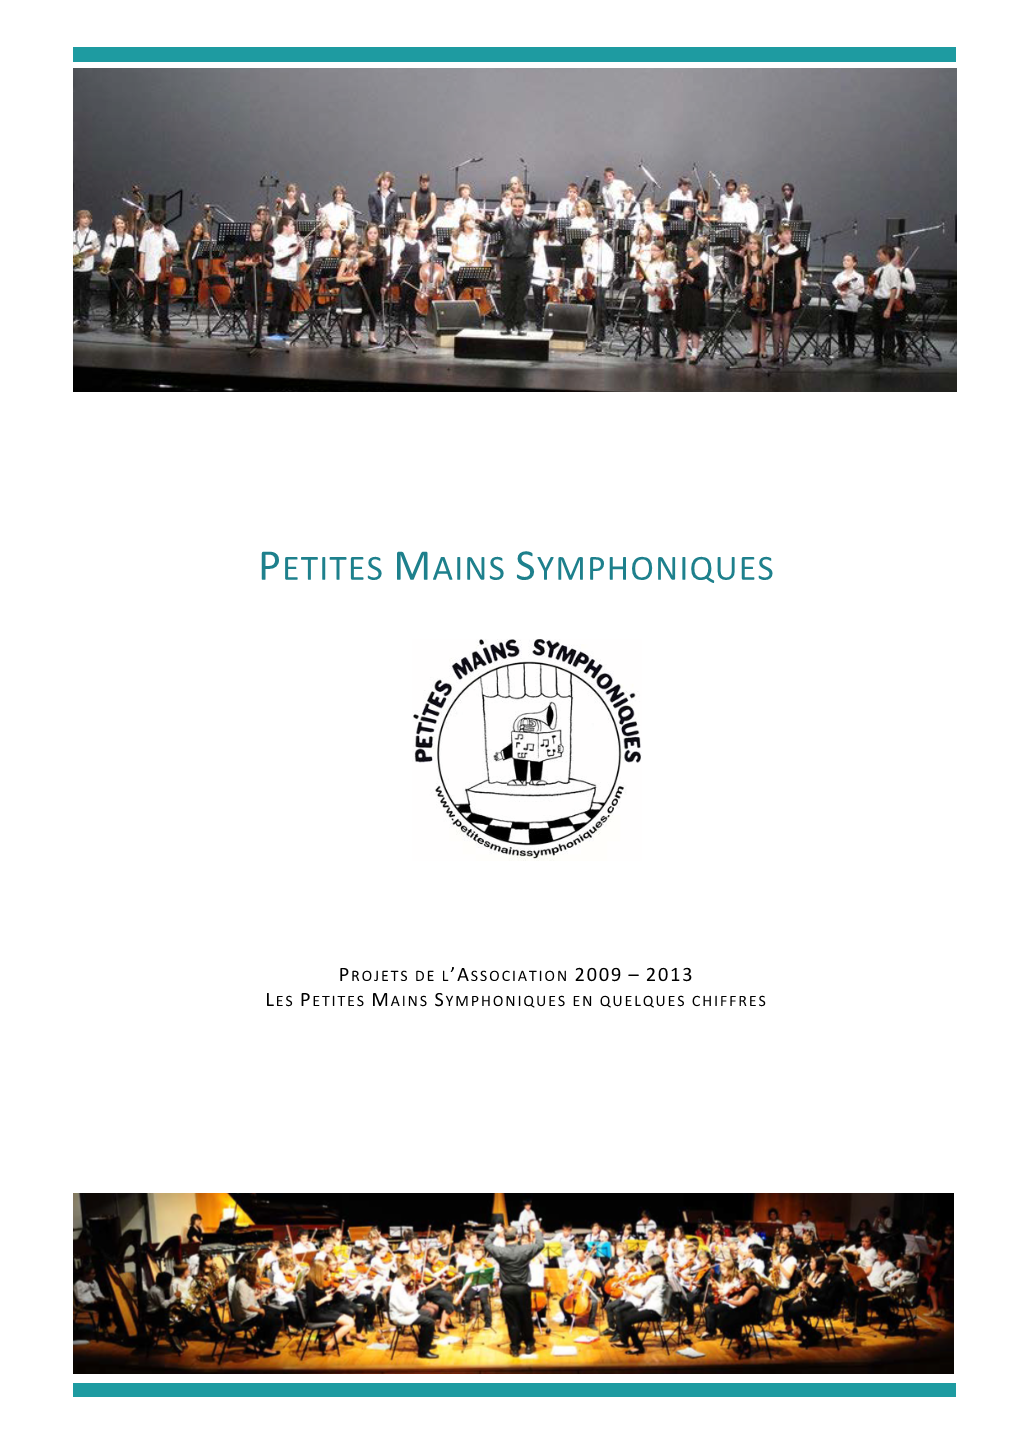 Les Projets De L'association Petites Mains Symphoniques